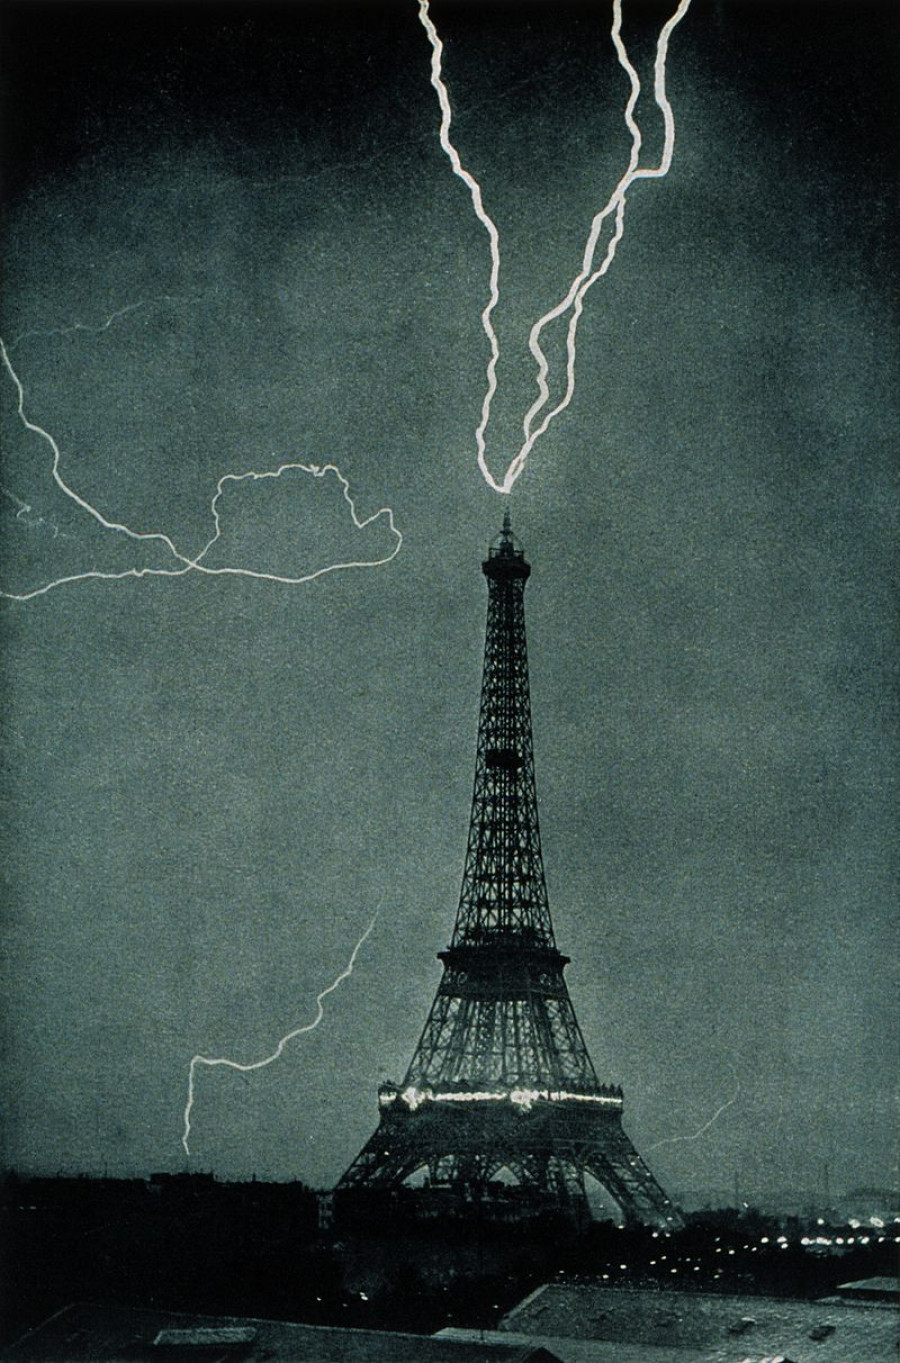 Молния бьёт в Эйфелеву башню,1902 год.